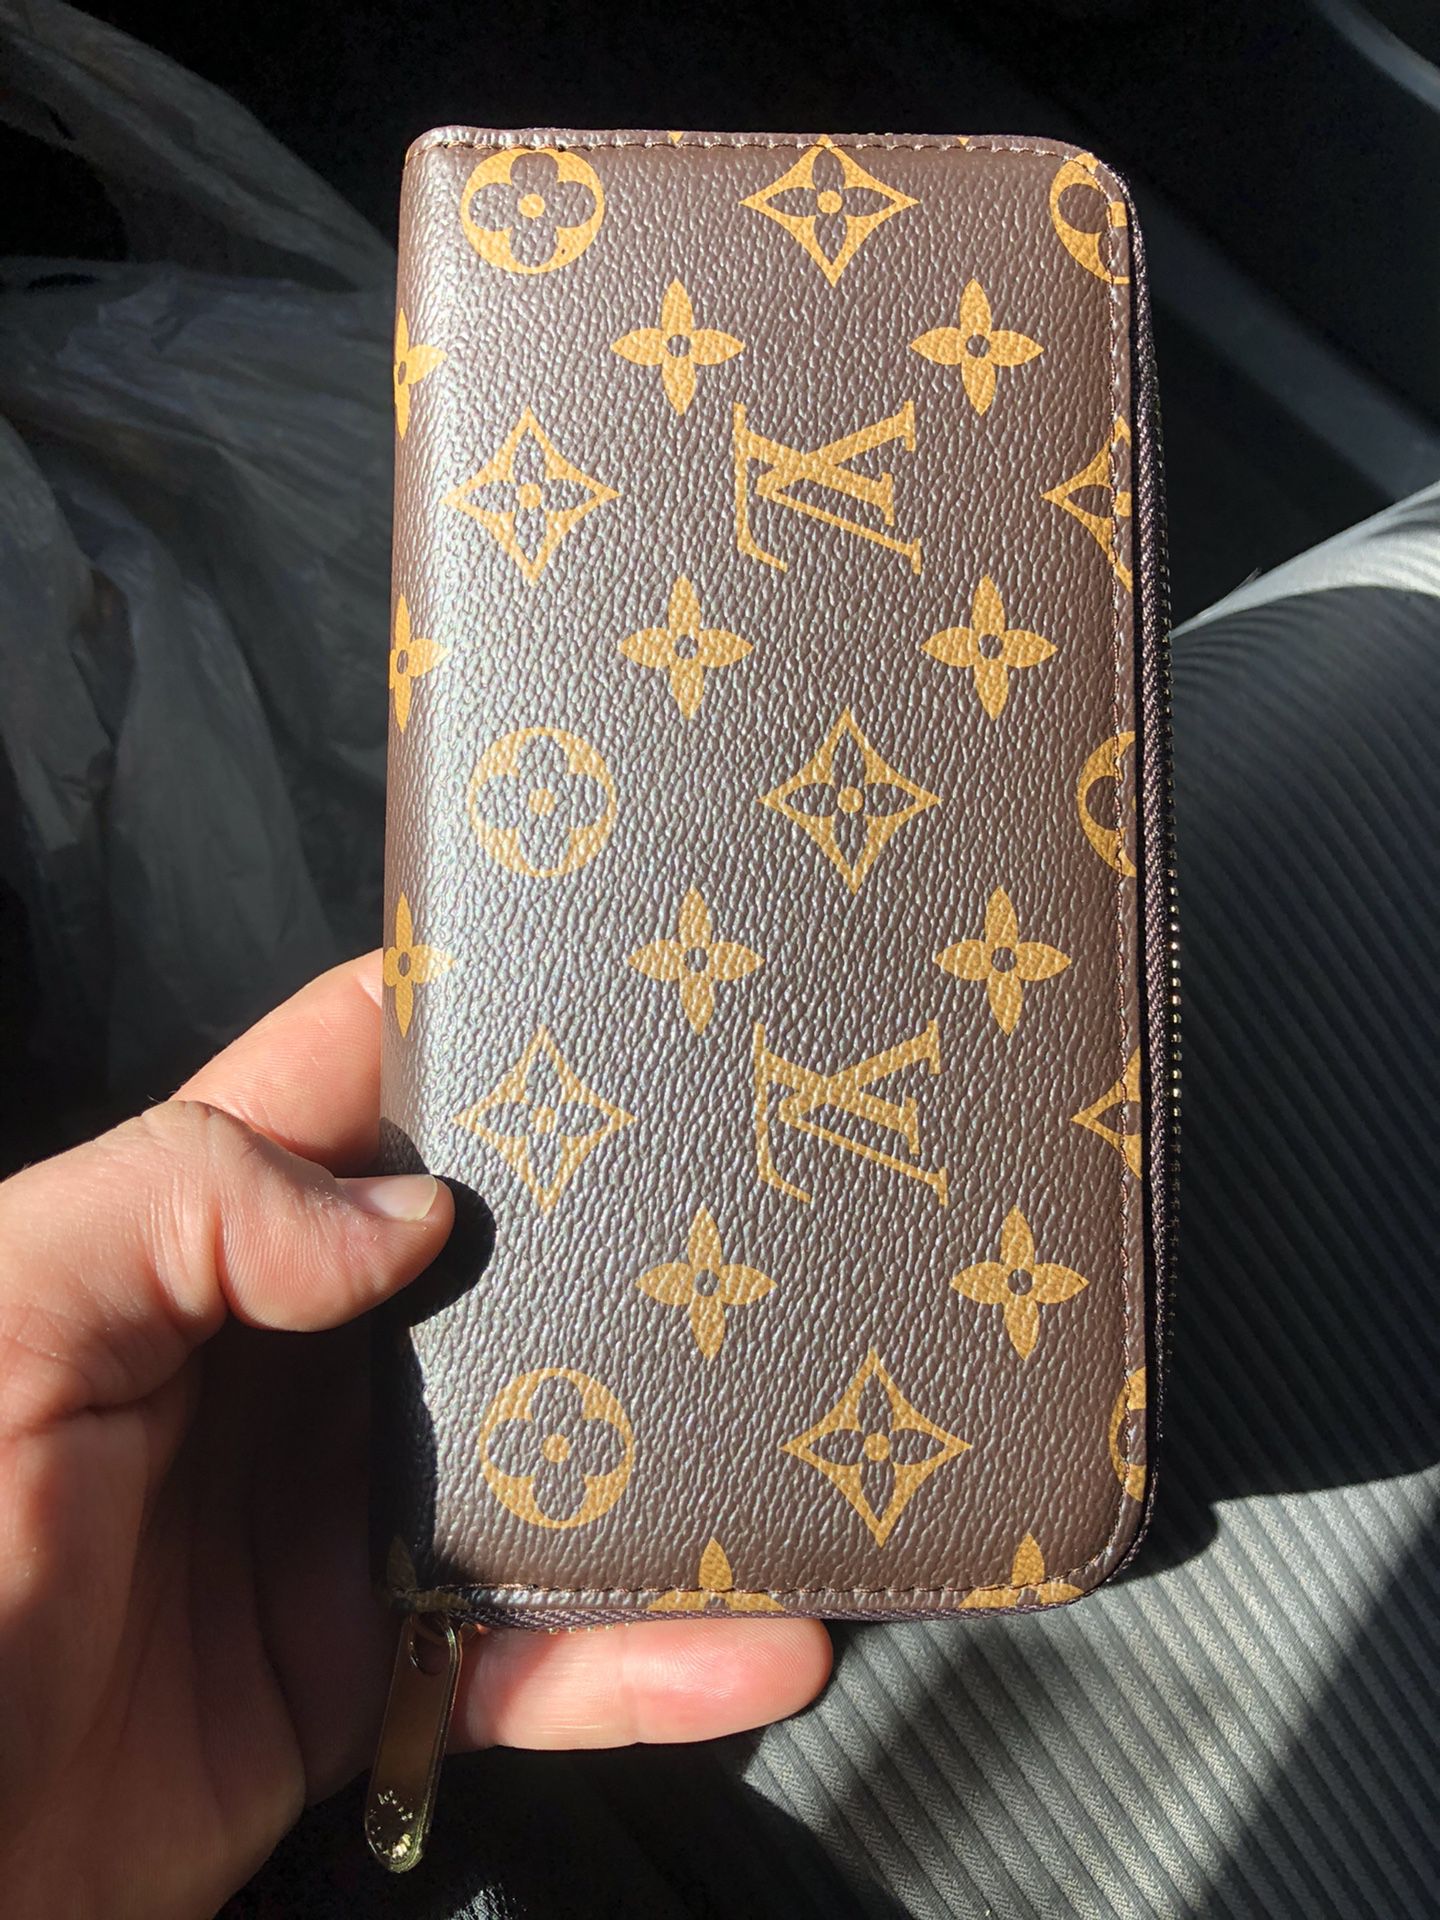 brand new womans zipper wallet